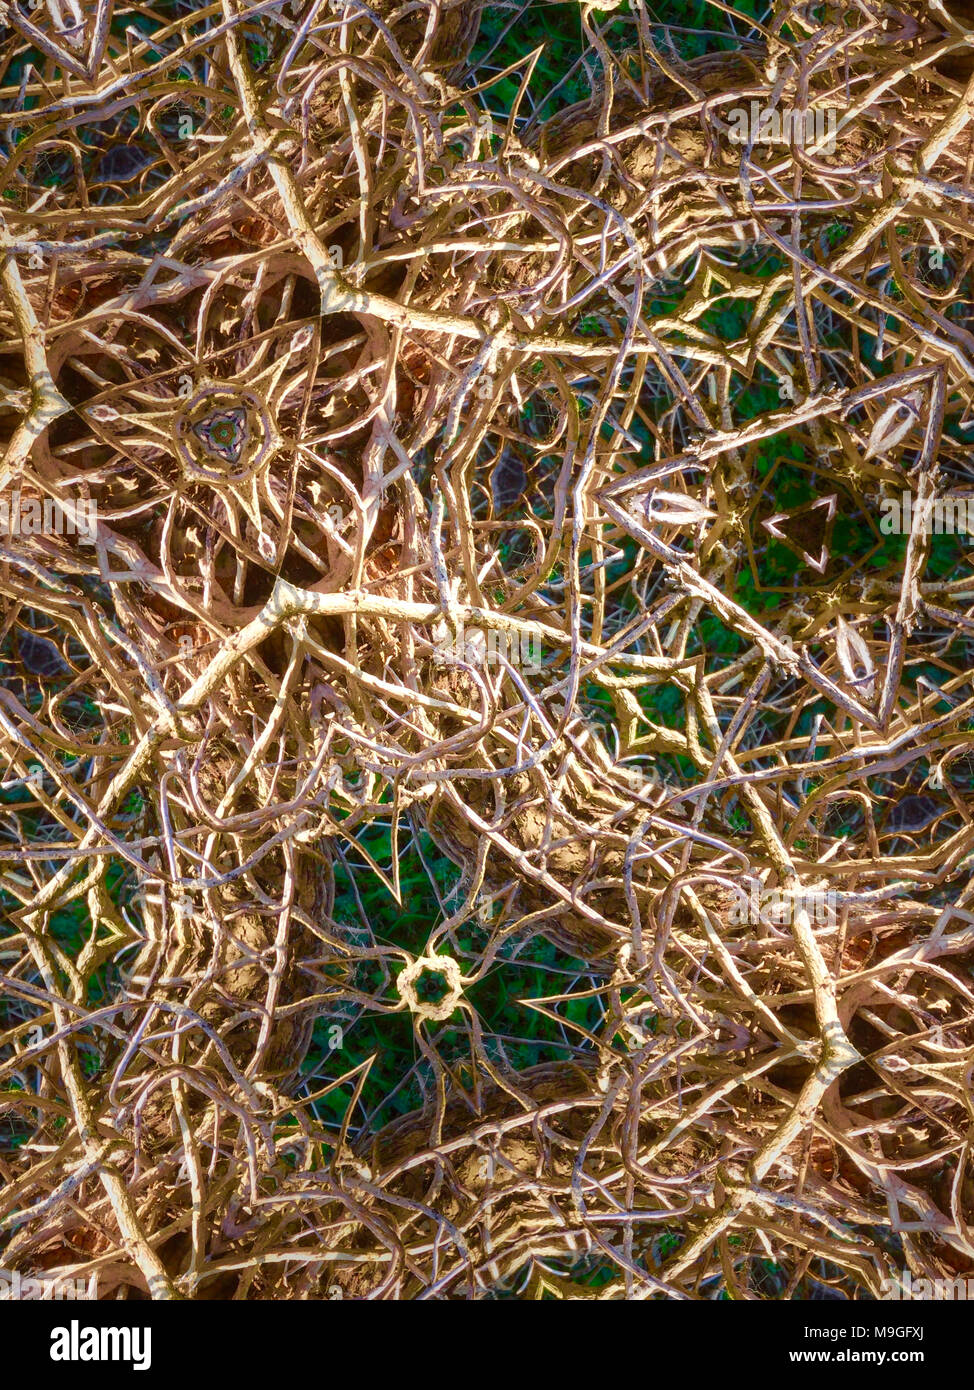 Abstract immagini caleidoscopica di Graminacee, giunchi, radici e paglia trovati nella campagna inglese Foto Stock